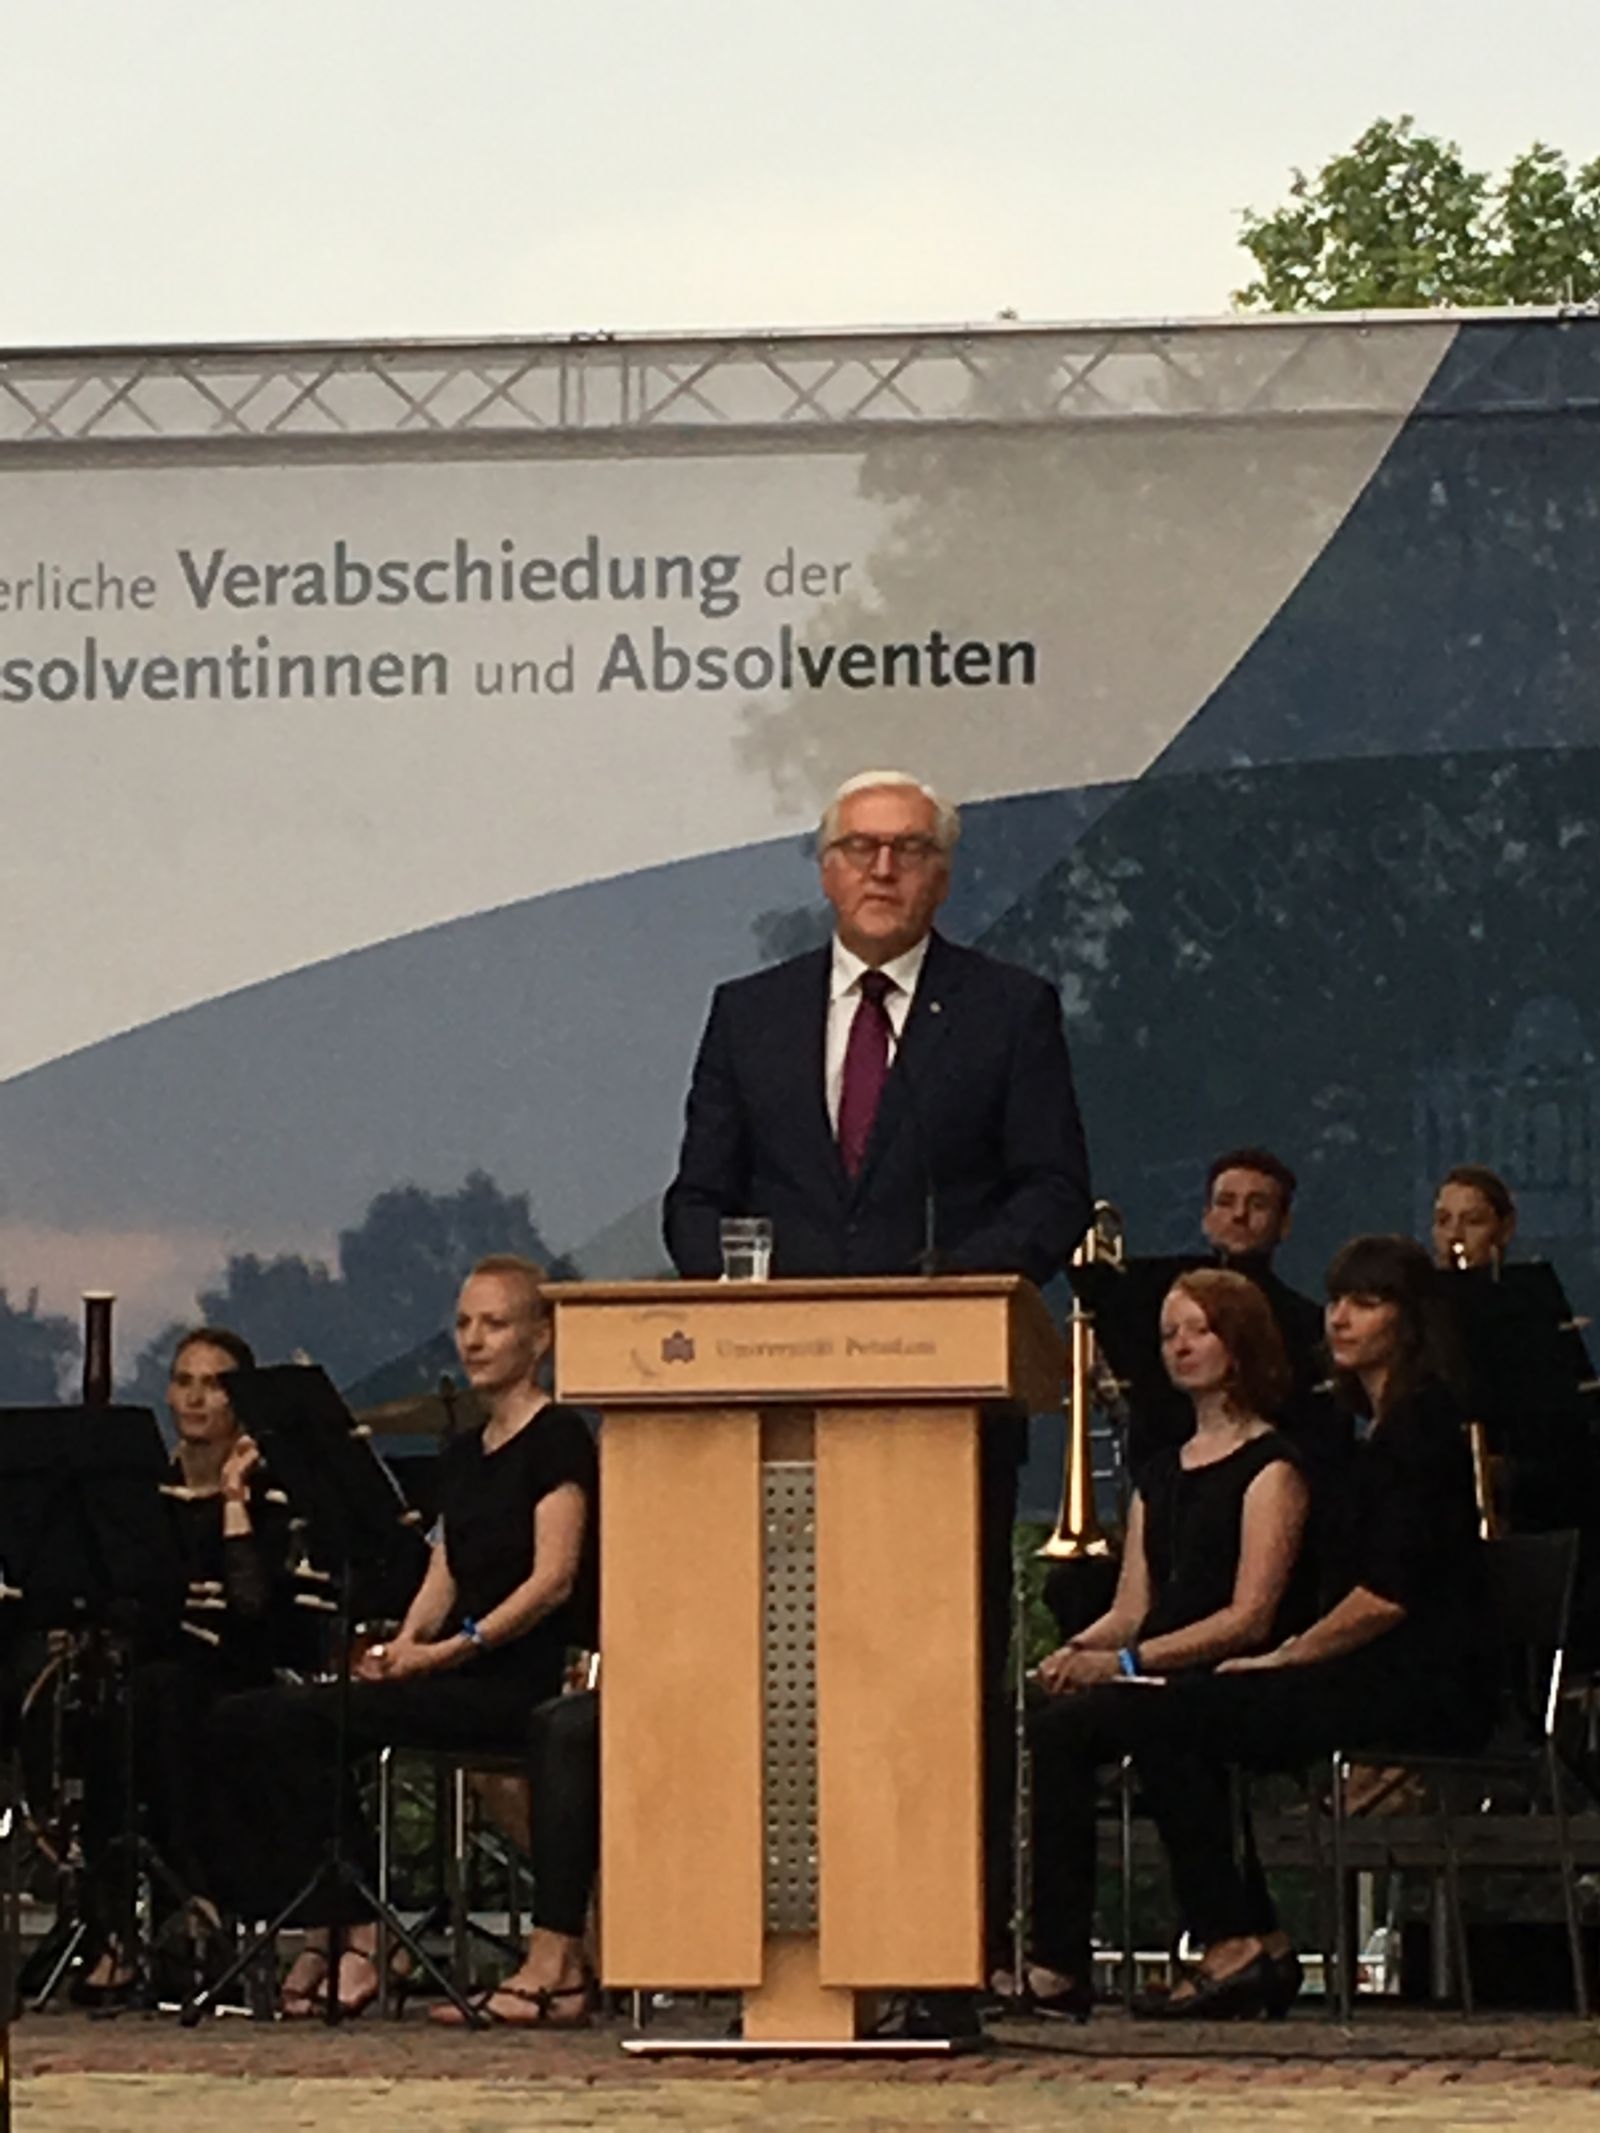 Zdjęcie - prezydent Republiki Federalnej Niemiec Frank-Walter Steinmeier wygłasza przemówienie